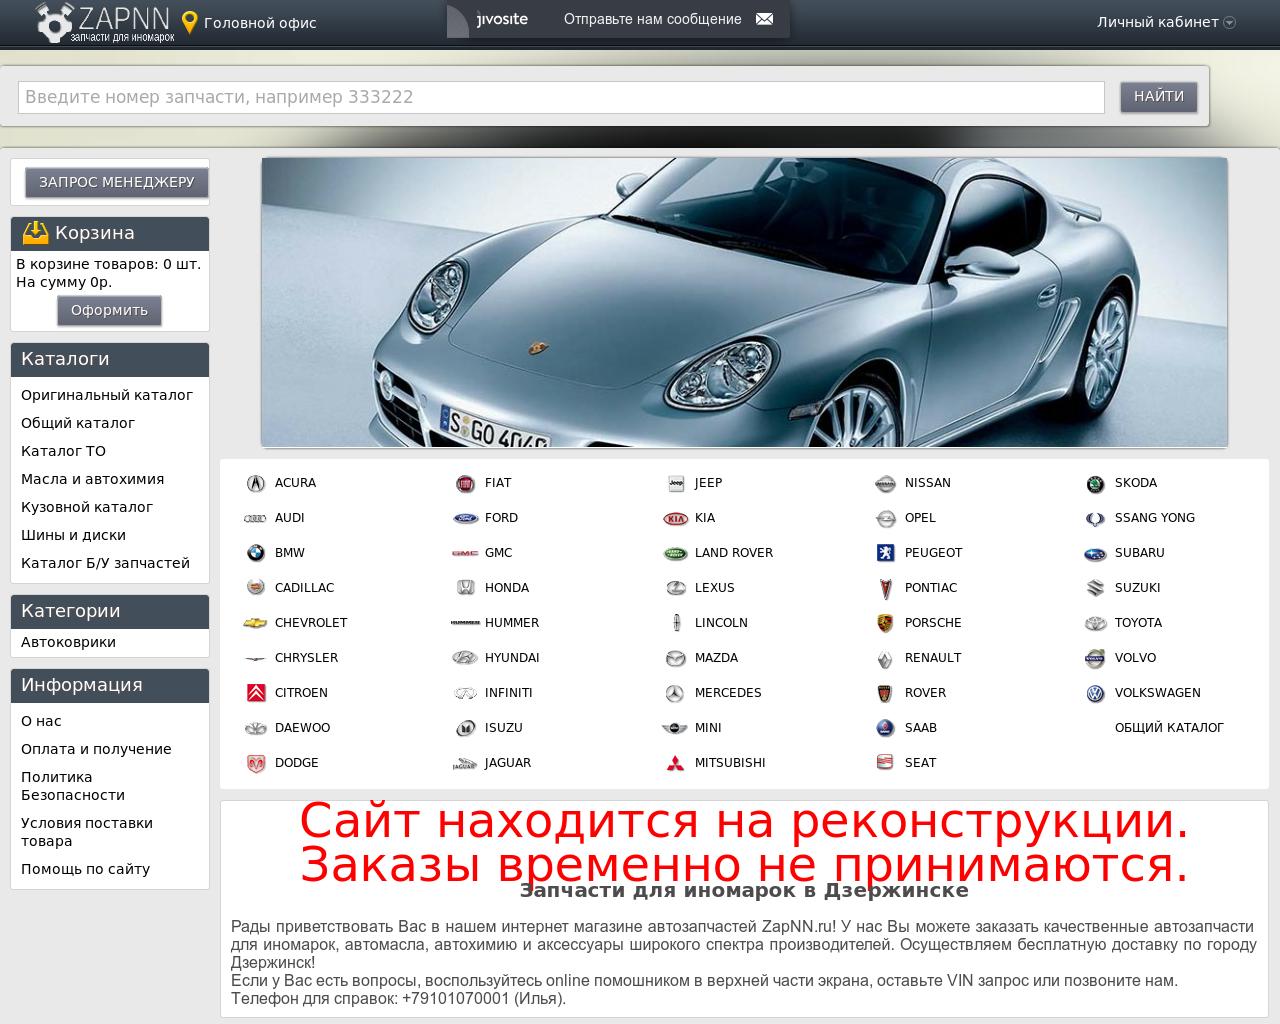 Изображение сайта zapnn.ru в разрешении 1280x1024